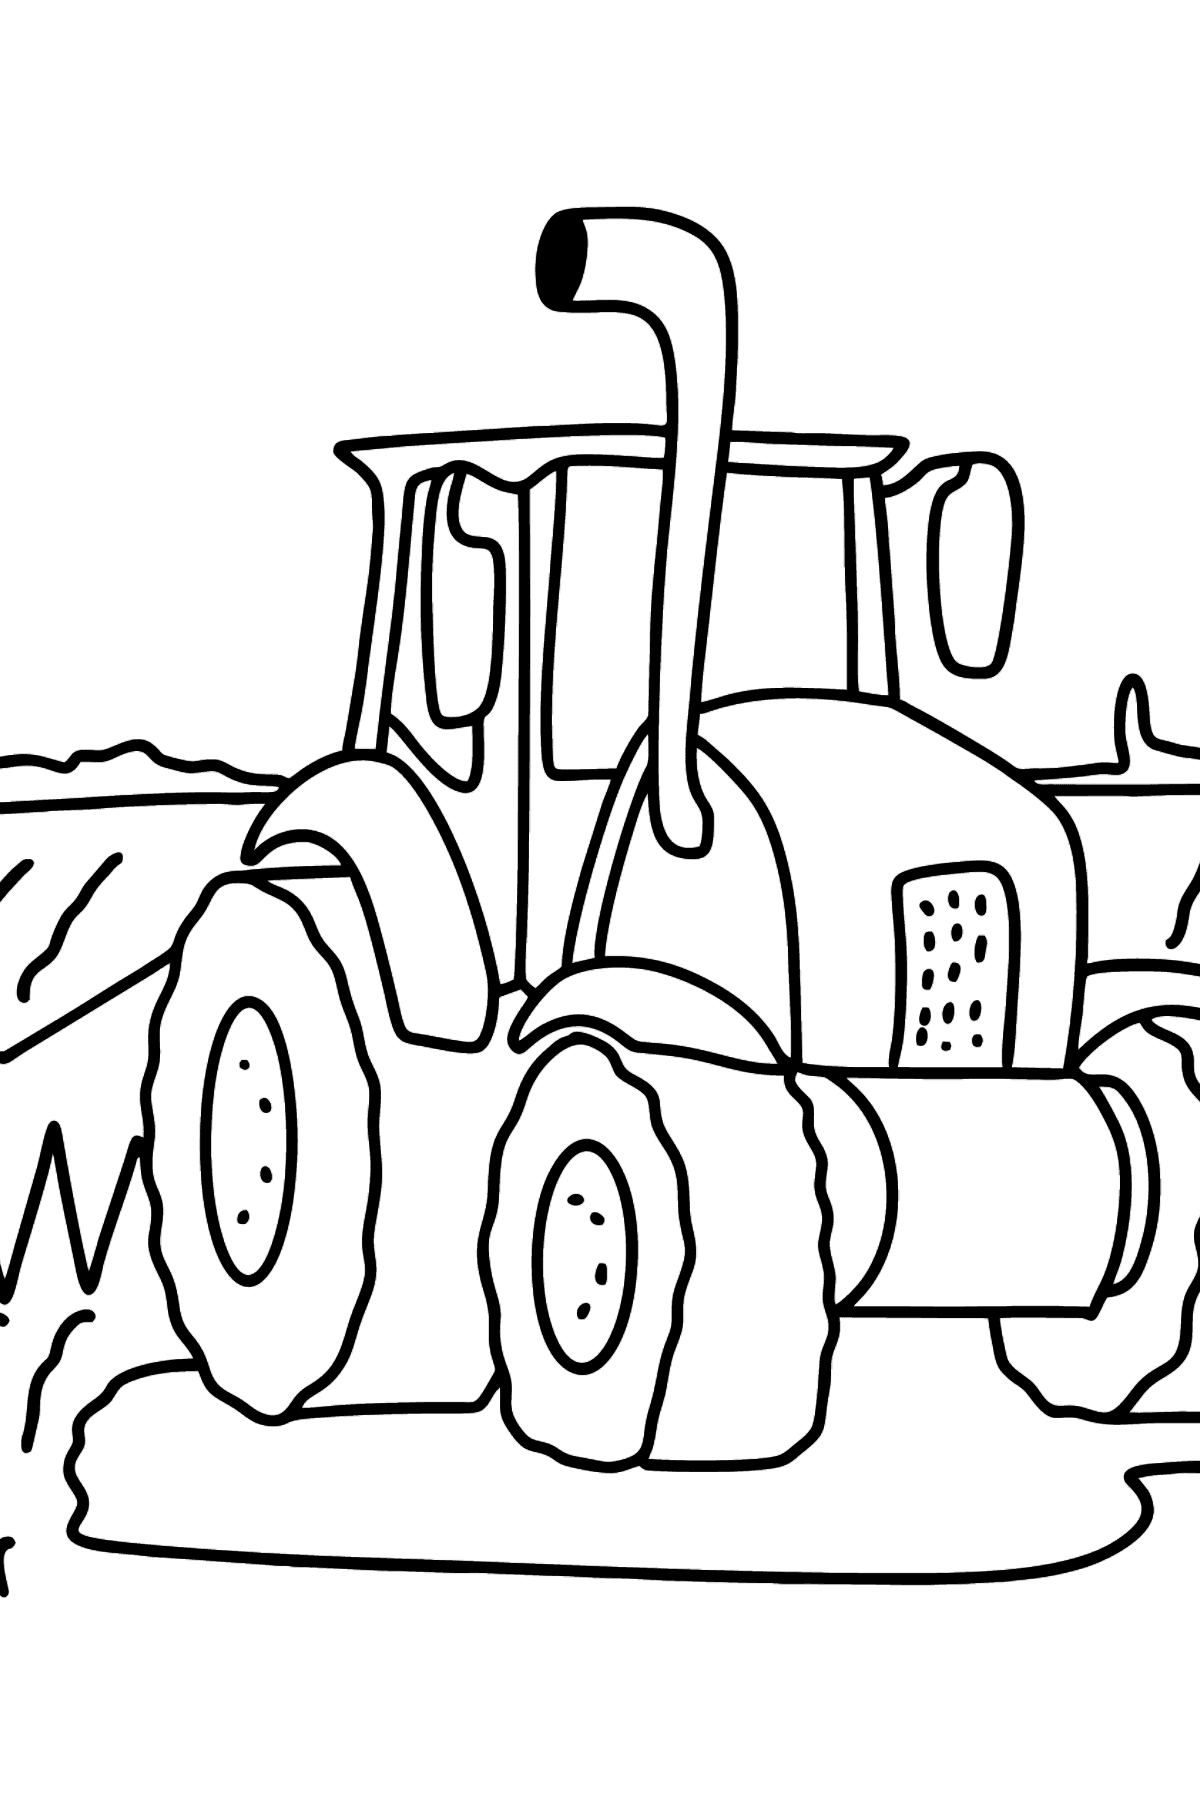 Kleurplaat tractor in het veld - kleurplaten voor kinderen